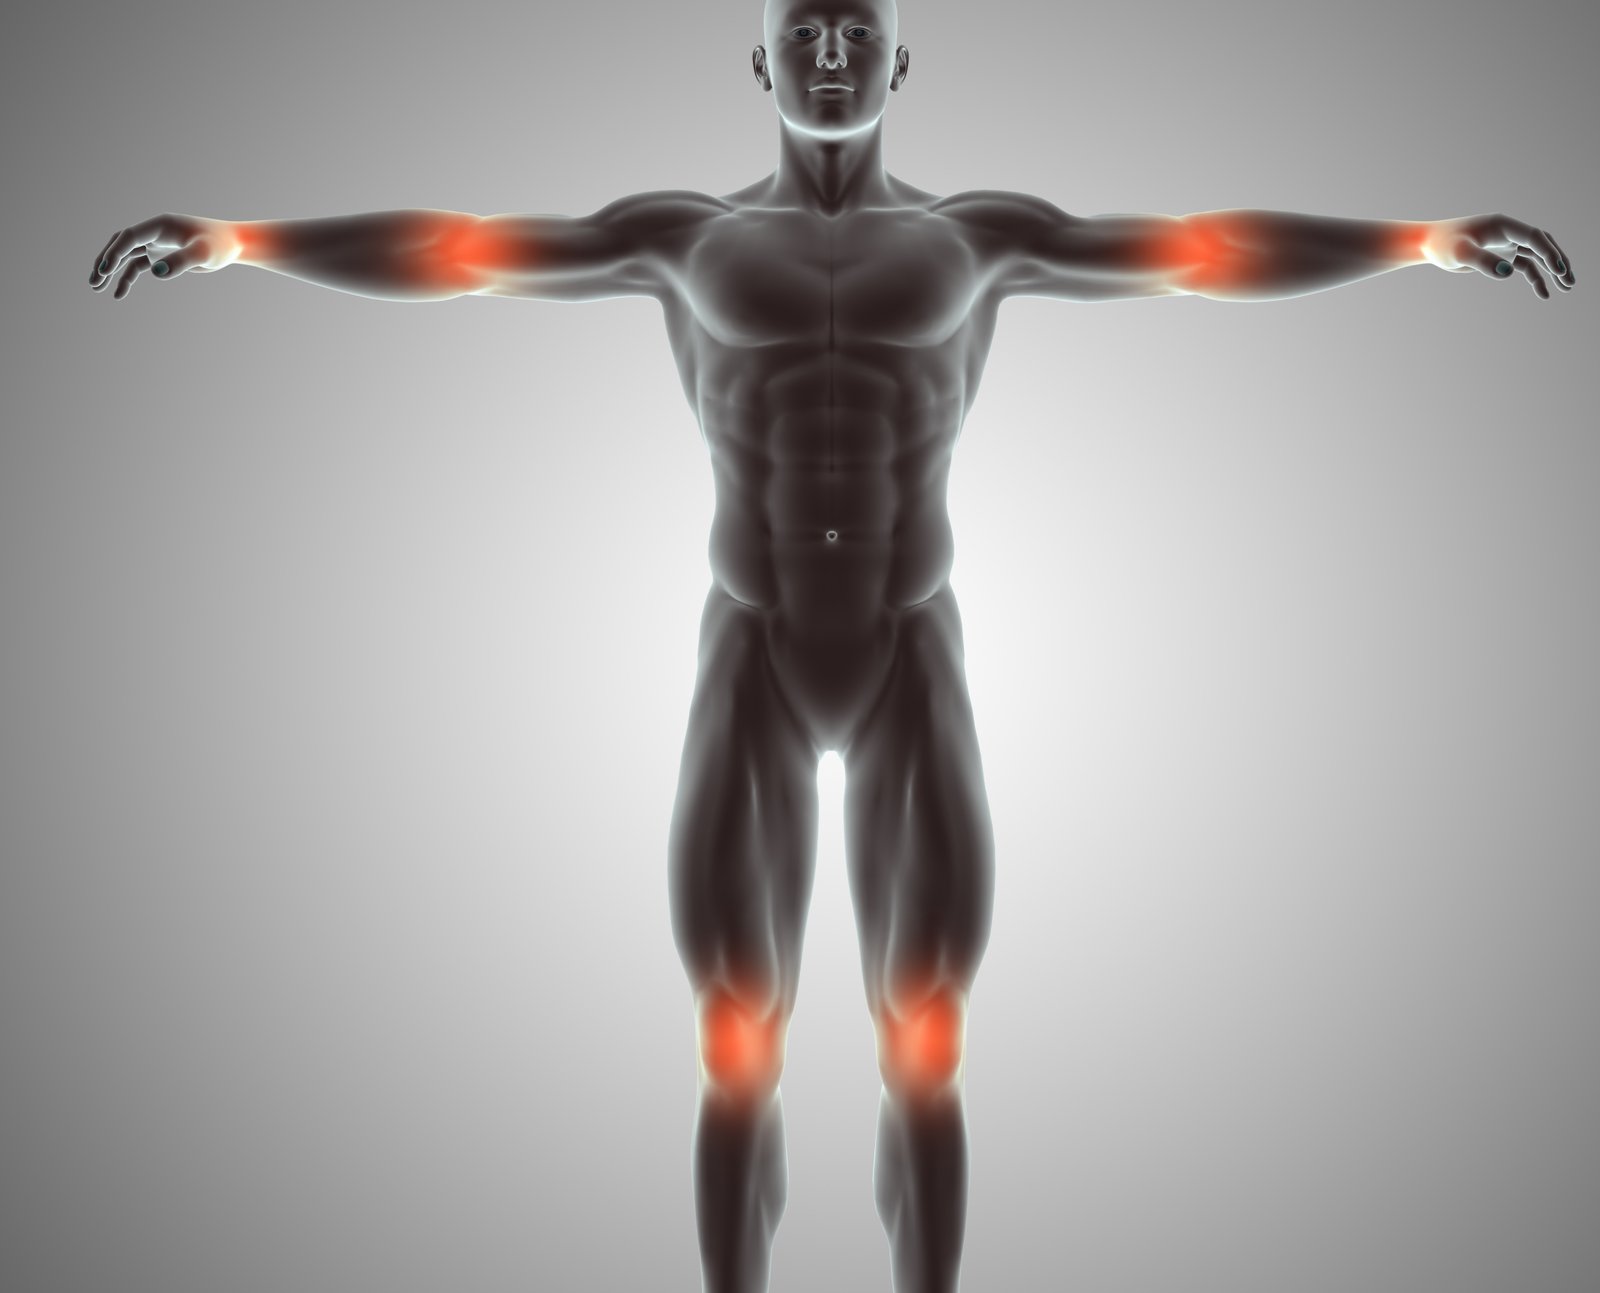 Sentindo dores musculares após o treino? Descubra como amenizá-las